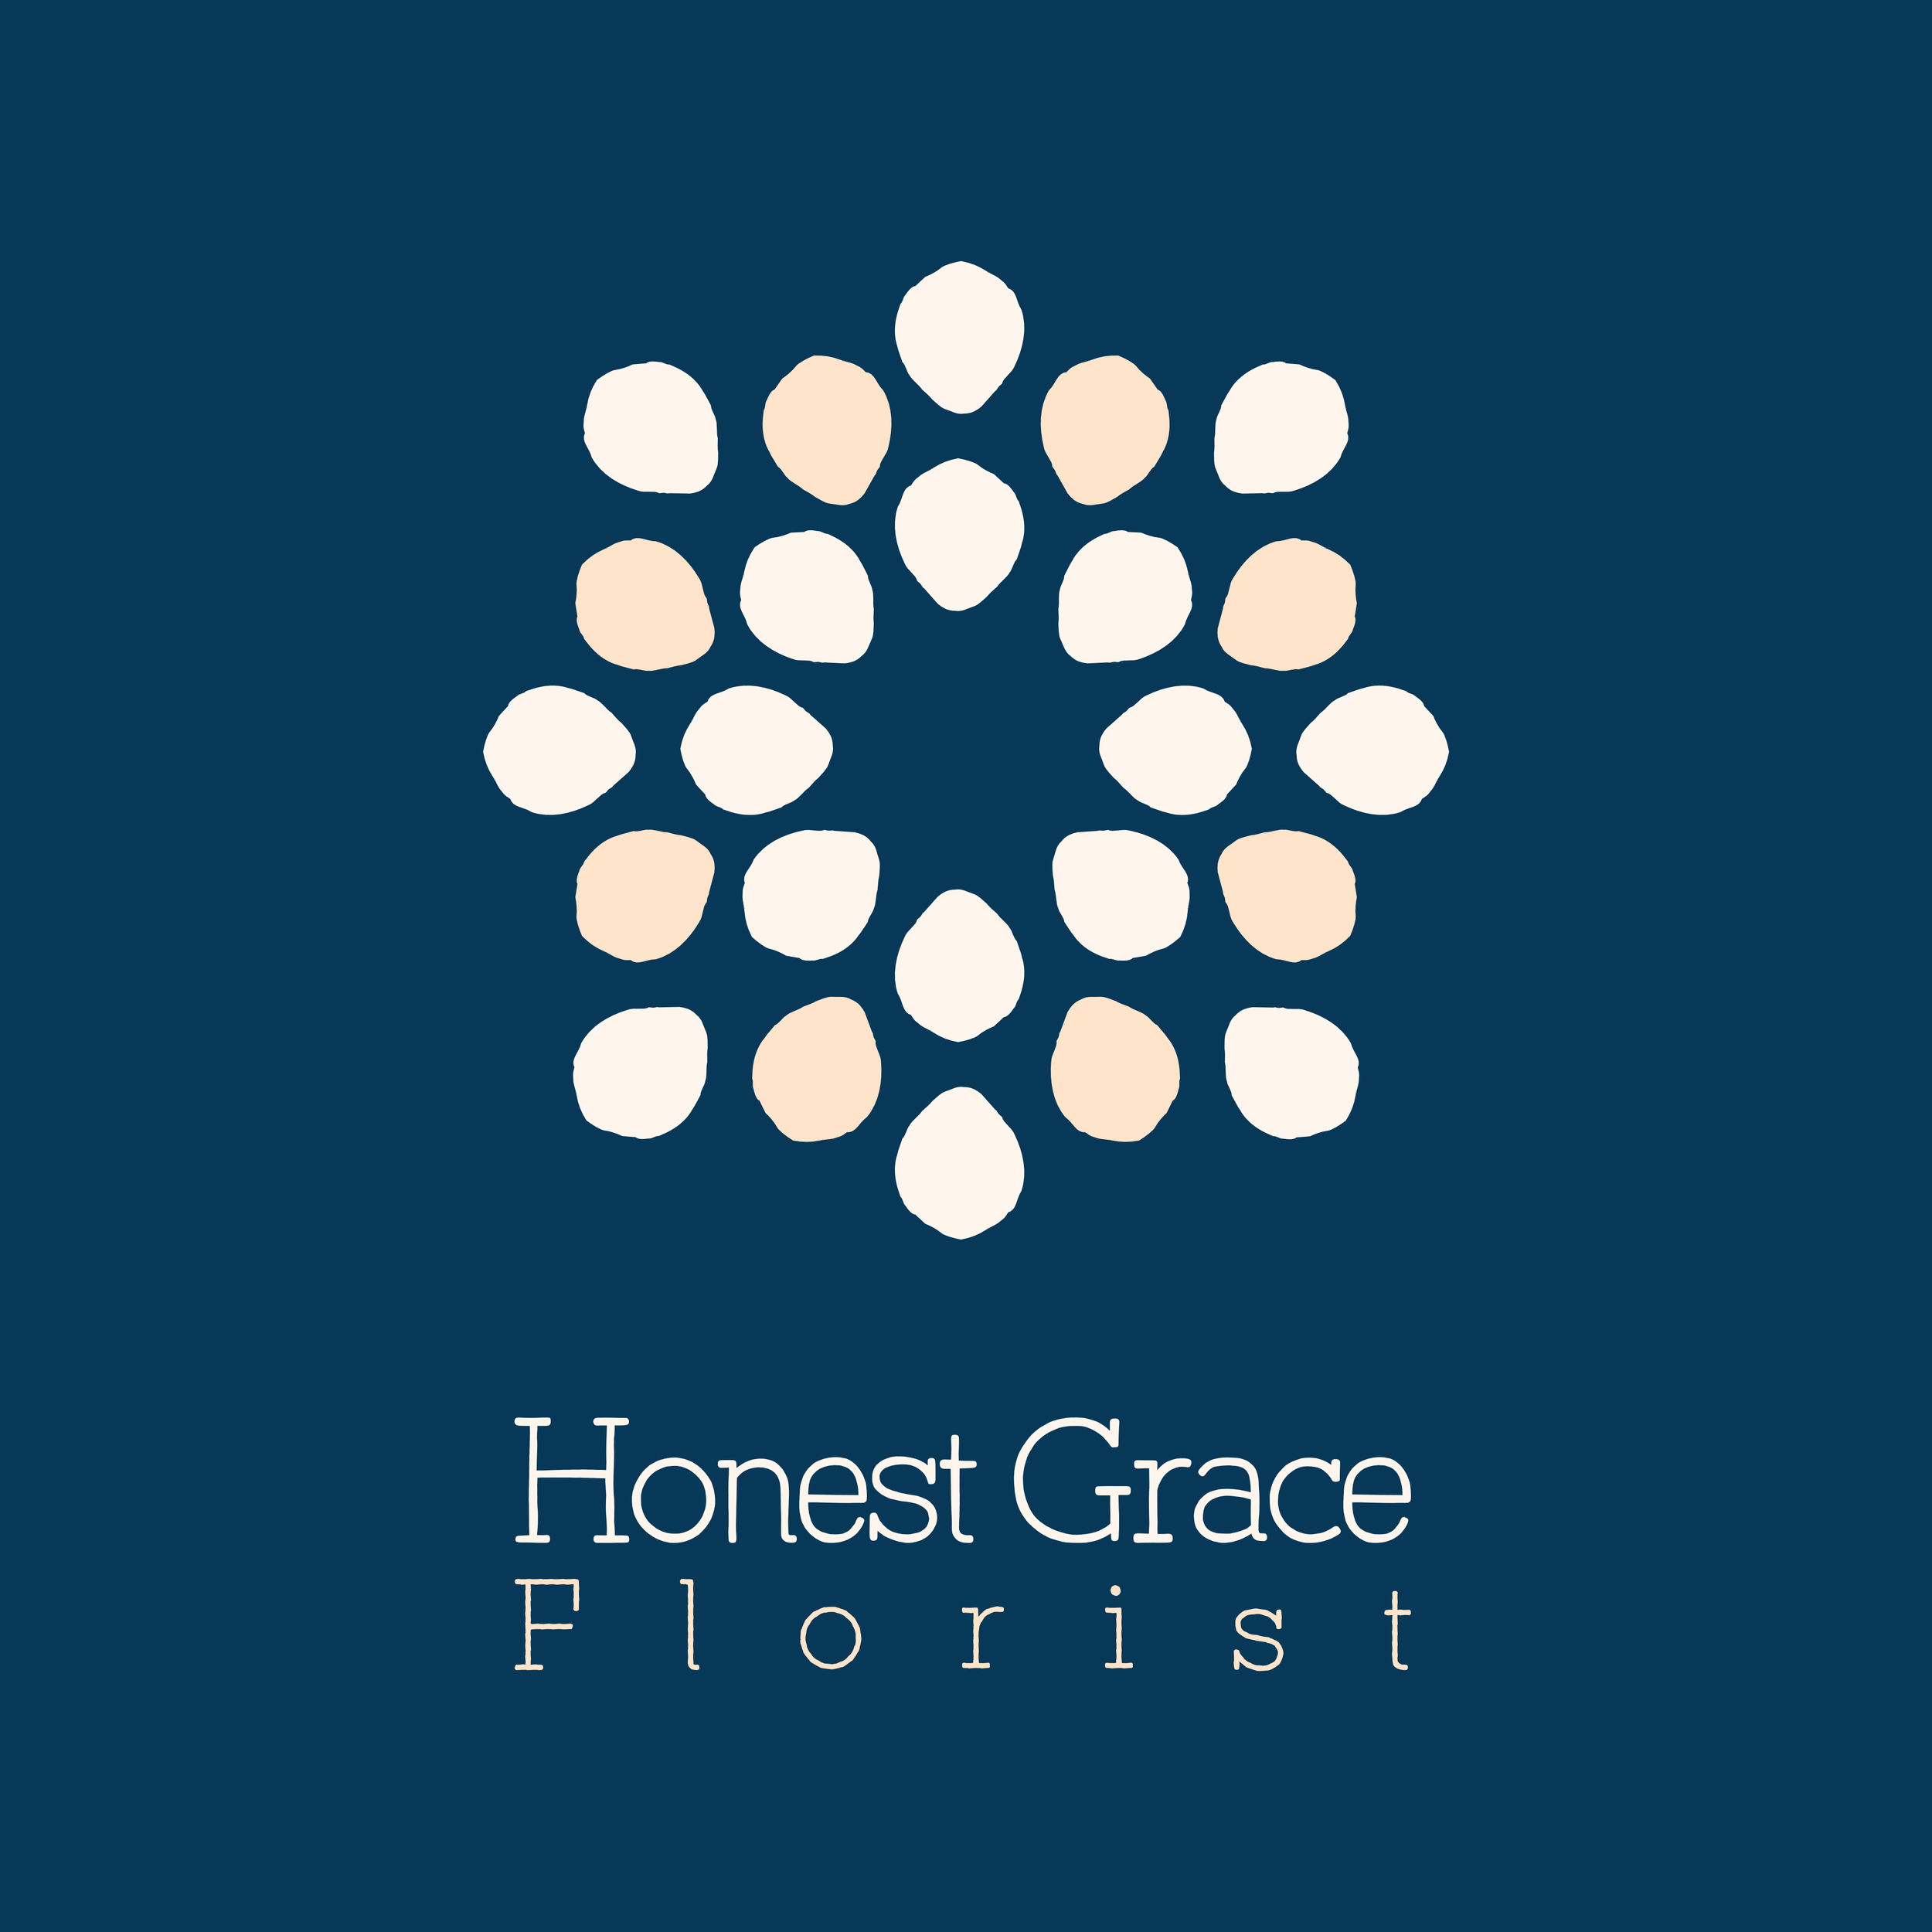 Order of service - Honest Grace.png